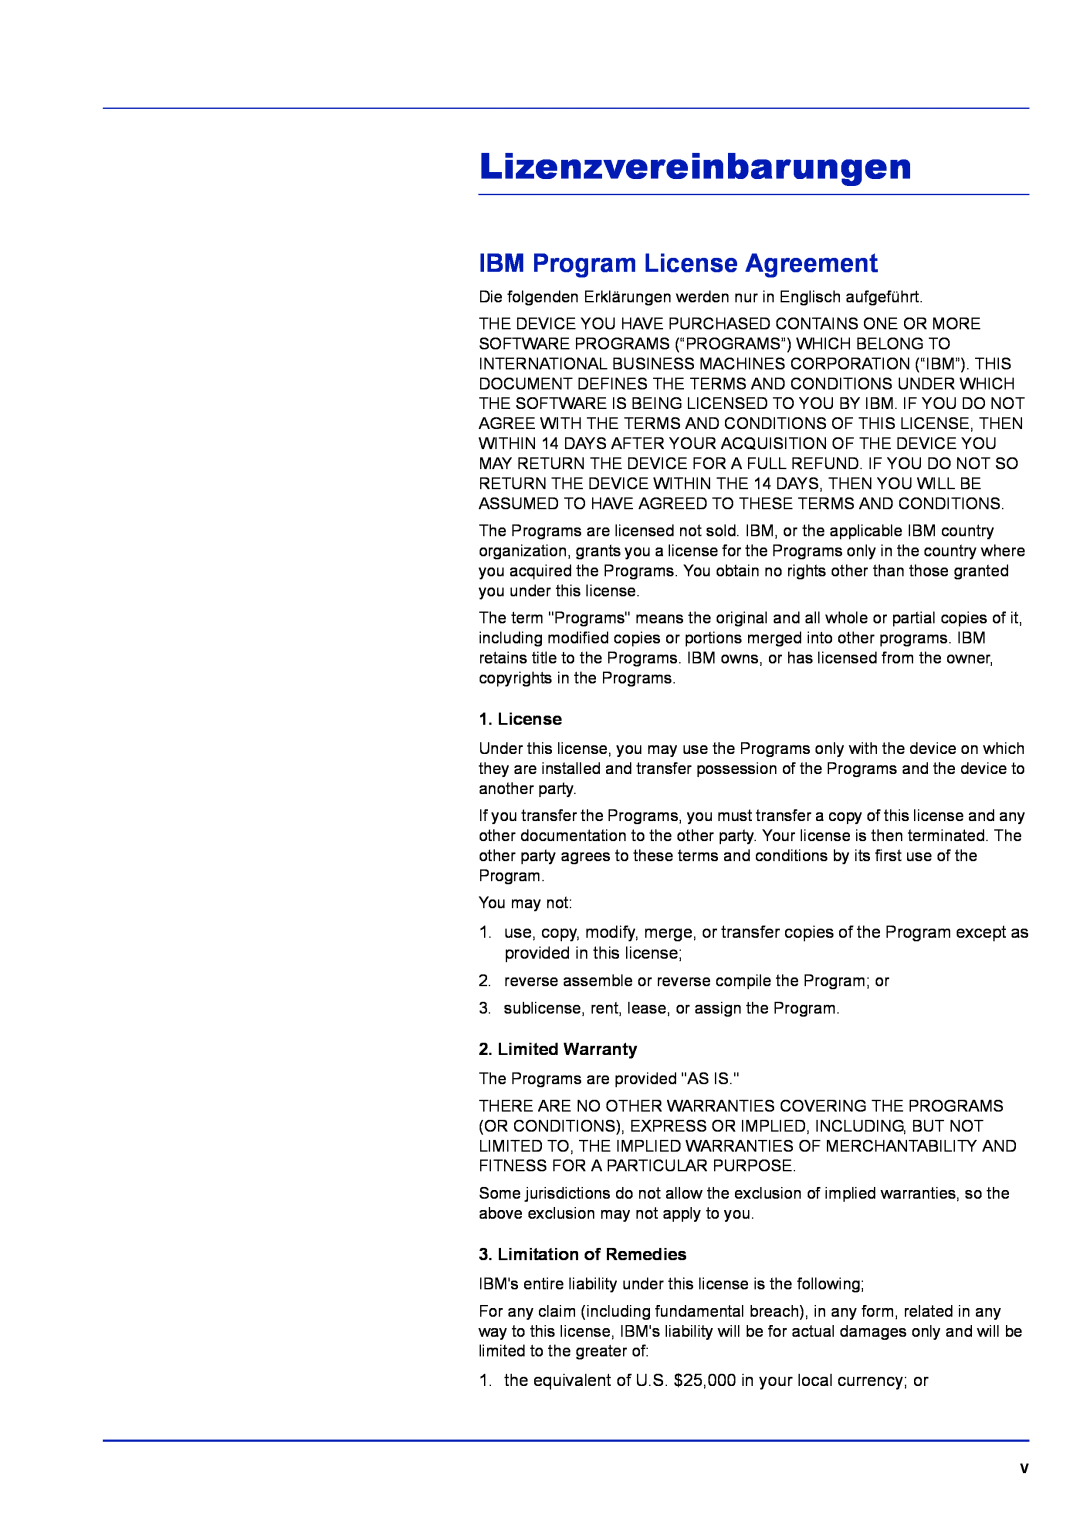 Kyocera FS-1320D, FS-1120D Lizenzvereinbarungen, IBM Program License Agreement, Limited Warranty, Limitation of Remedies 